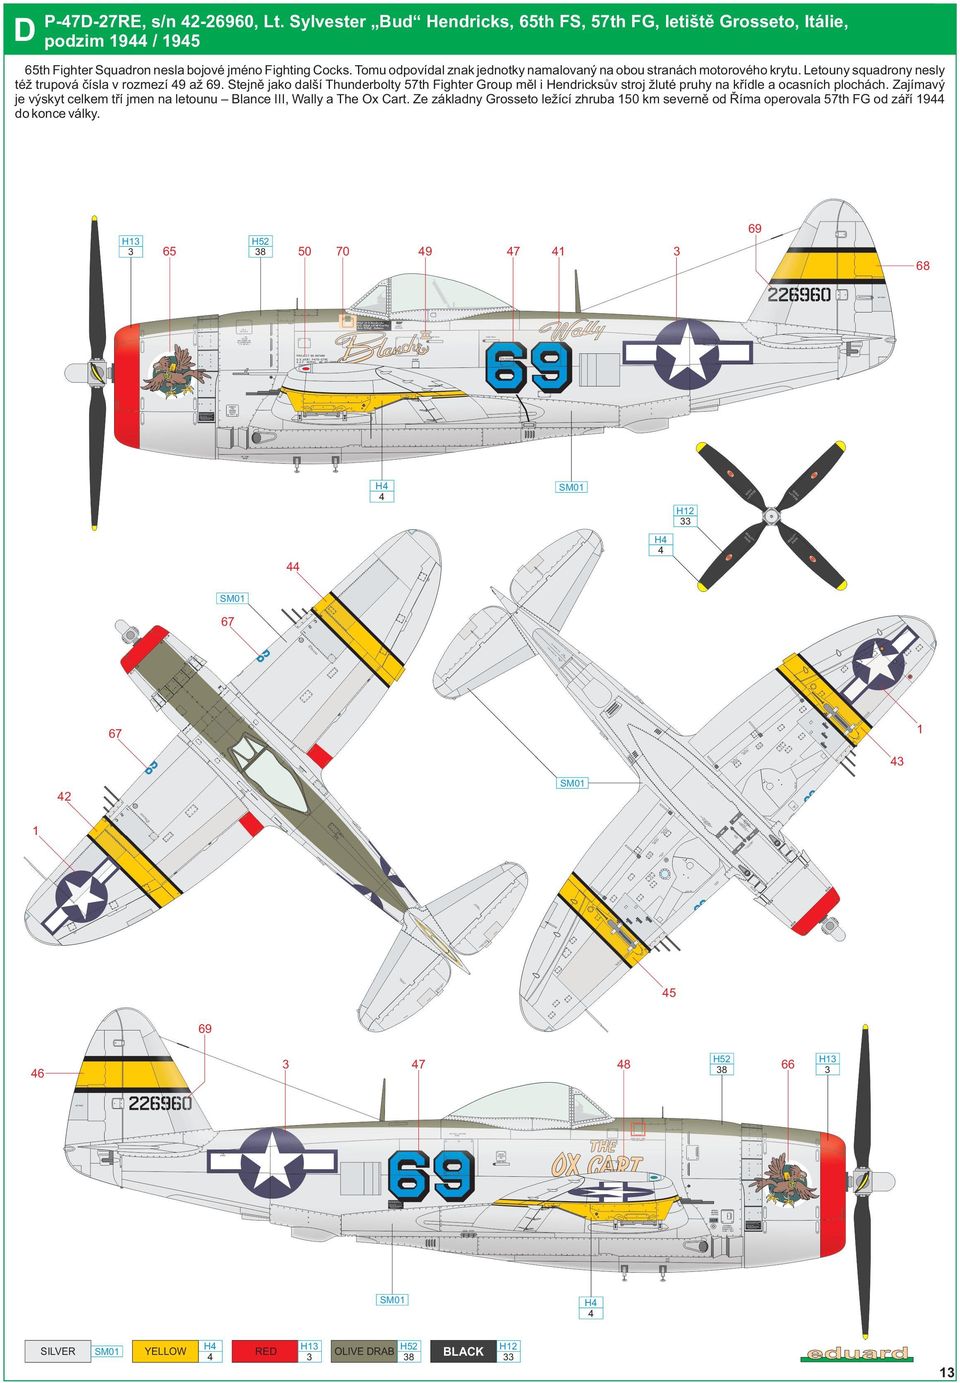 Stejně jako další Thunderbolty 57th Fighter Group měl i Hendricksův stroj žluté pruhy na křídle a ocasních plochách.